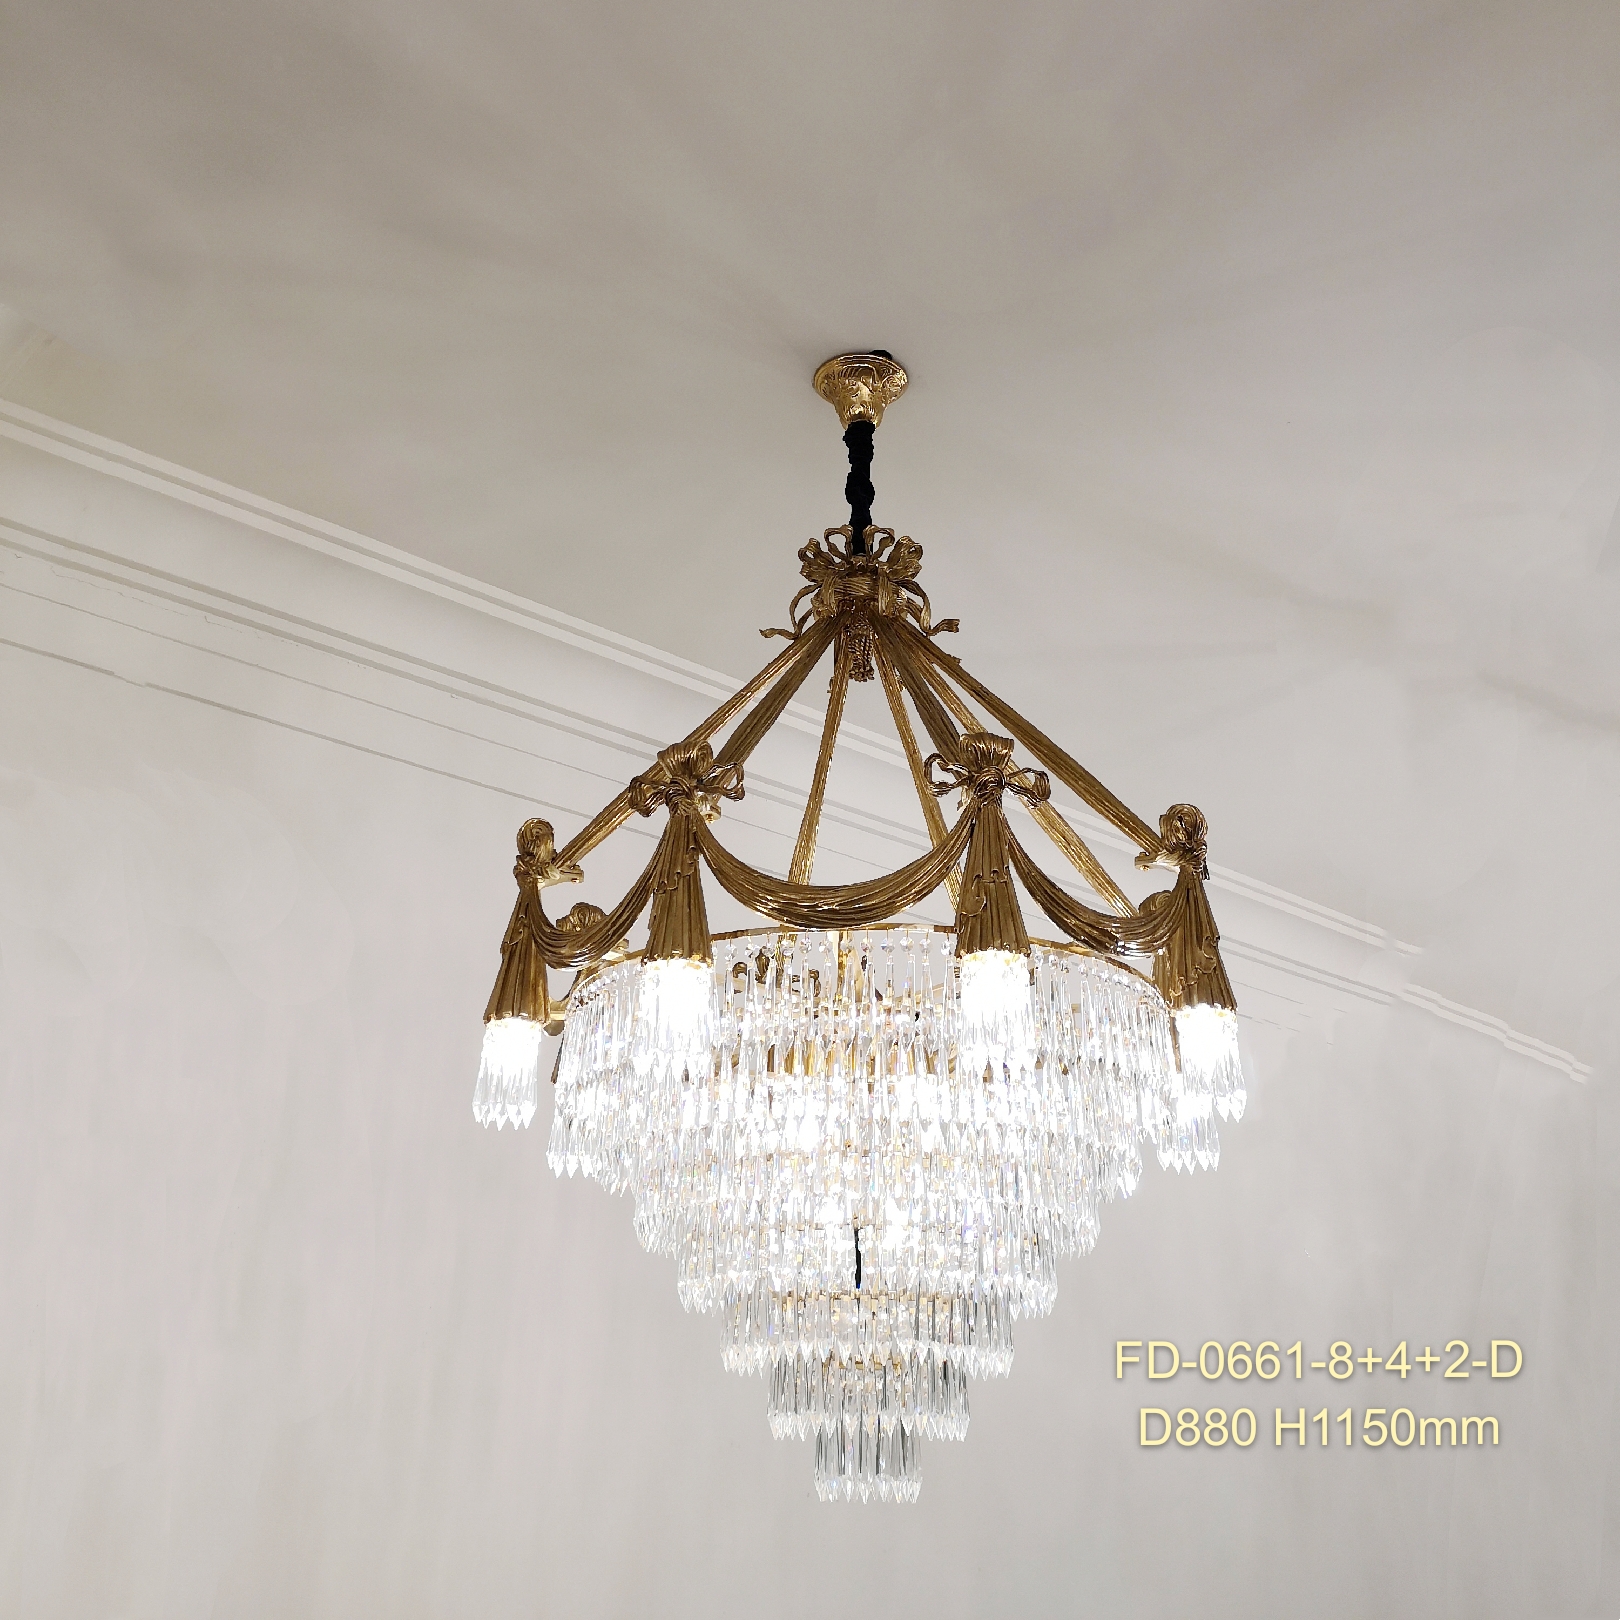 Хрустальные декоративные антикварные латунные люстры для отеля Villa (FD-1713-8+8+4)